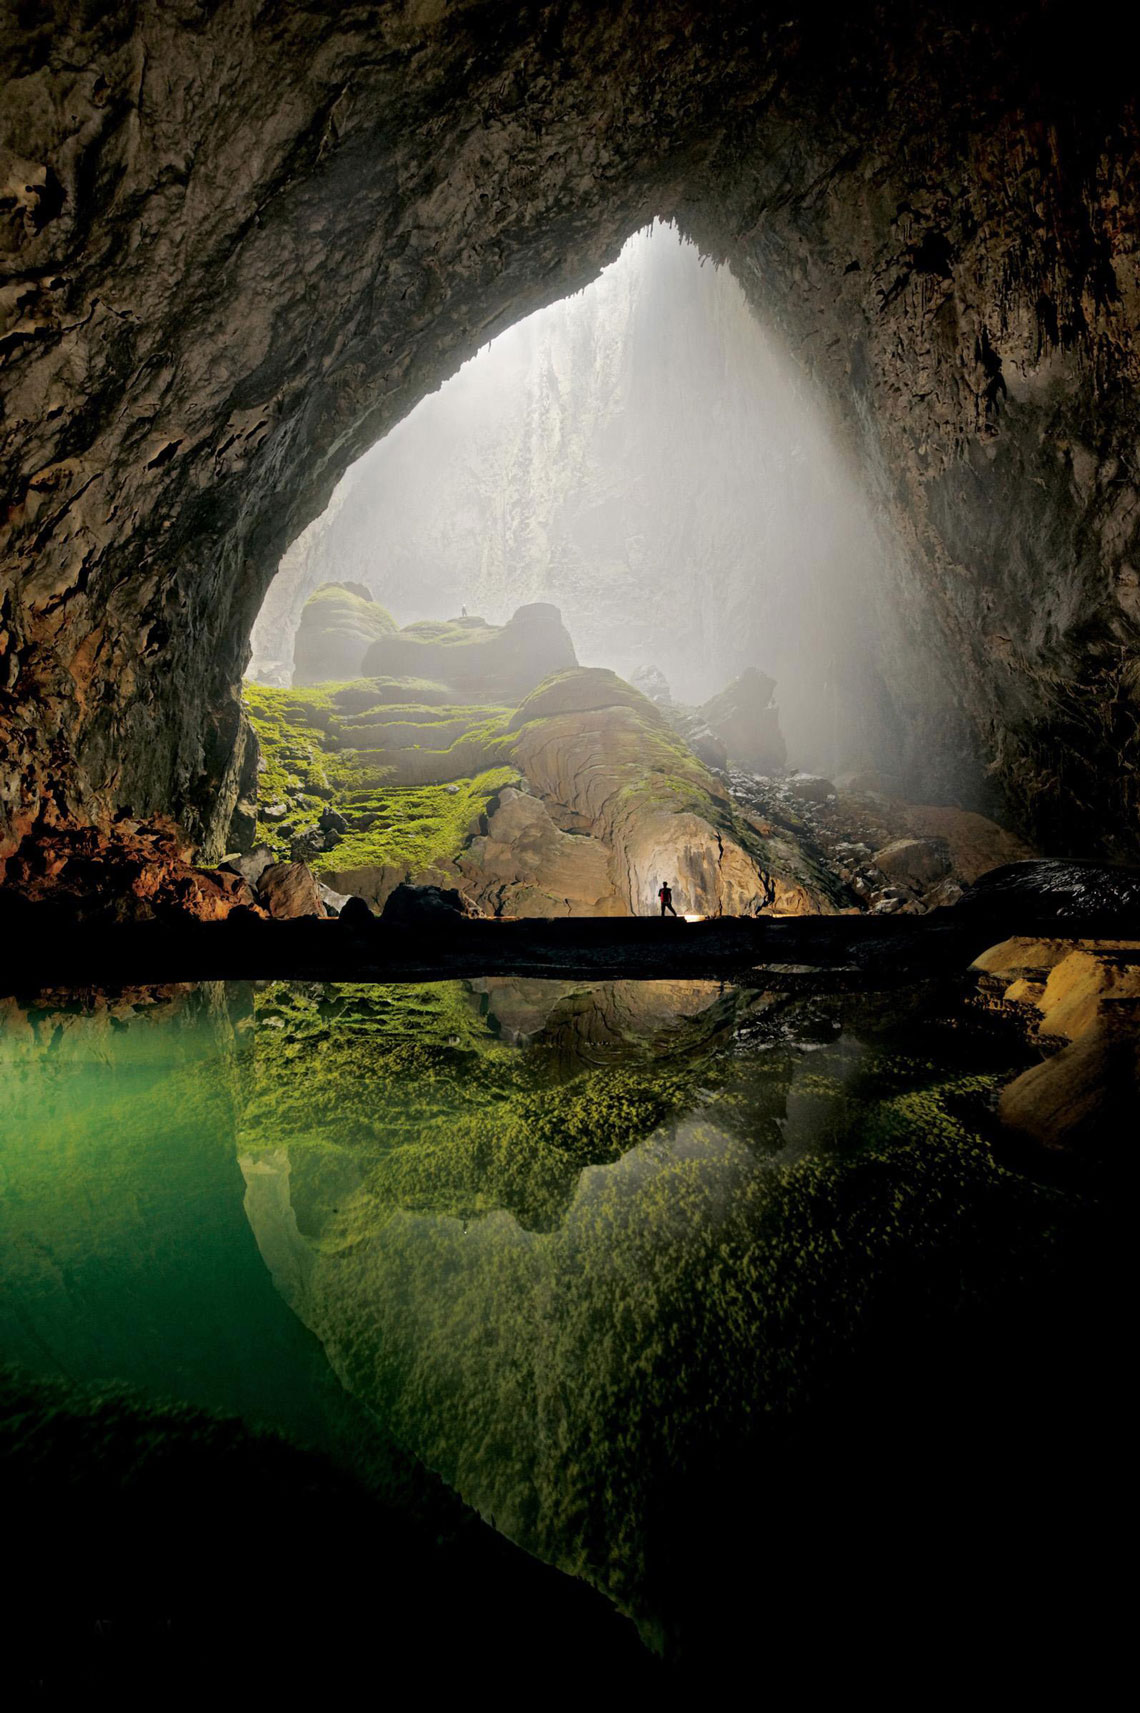 Son Doong es la cueva más grande del mundo. Se encuentra en el centro de Vietnam, en la provincia de Quang Binh, en el Parque Nacional Phong Nha Kebang. La cueva tiene un río subterráneo que inunda algunas partes de la cueva durante la temporada de lluvias. Esta cueva es conocida por los lugareños desde 1991, en abril de 2009 fue descubierta por un grupo de espeleólogos británicos.